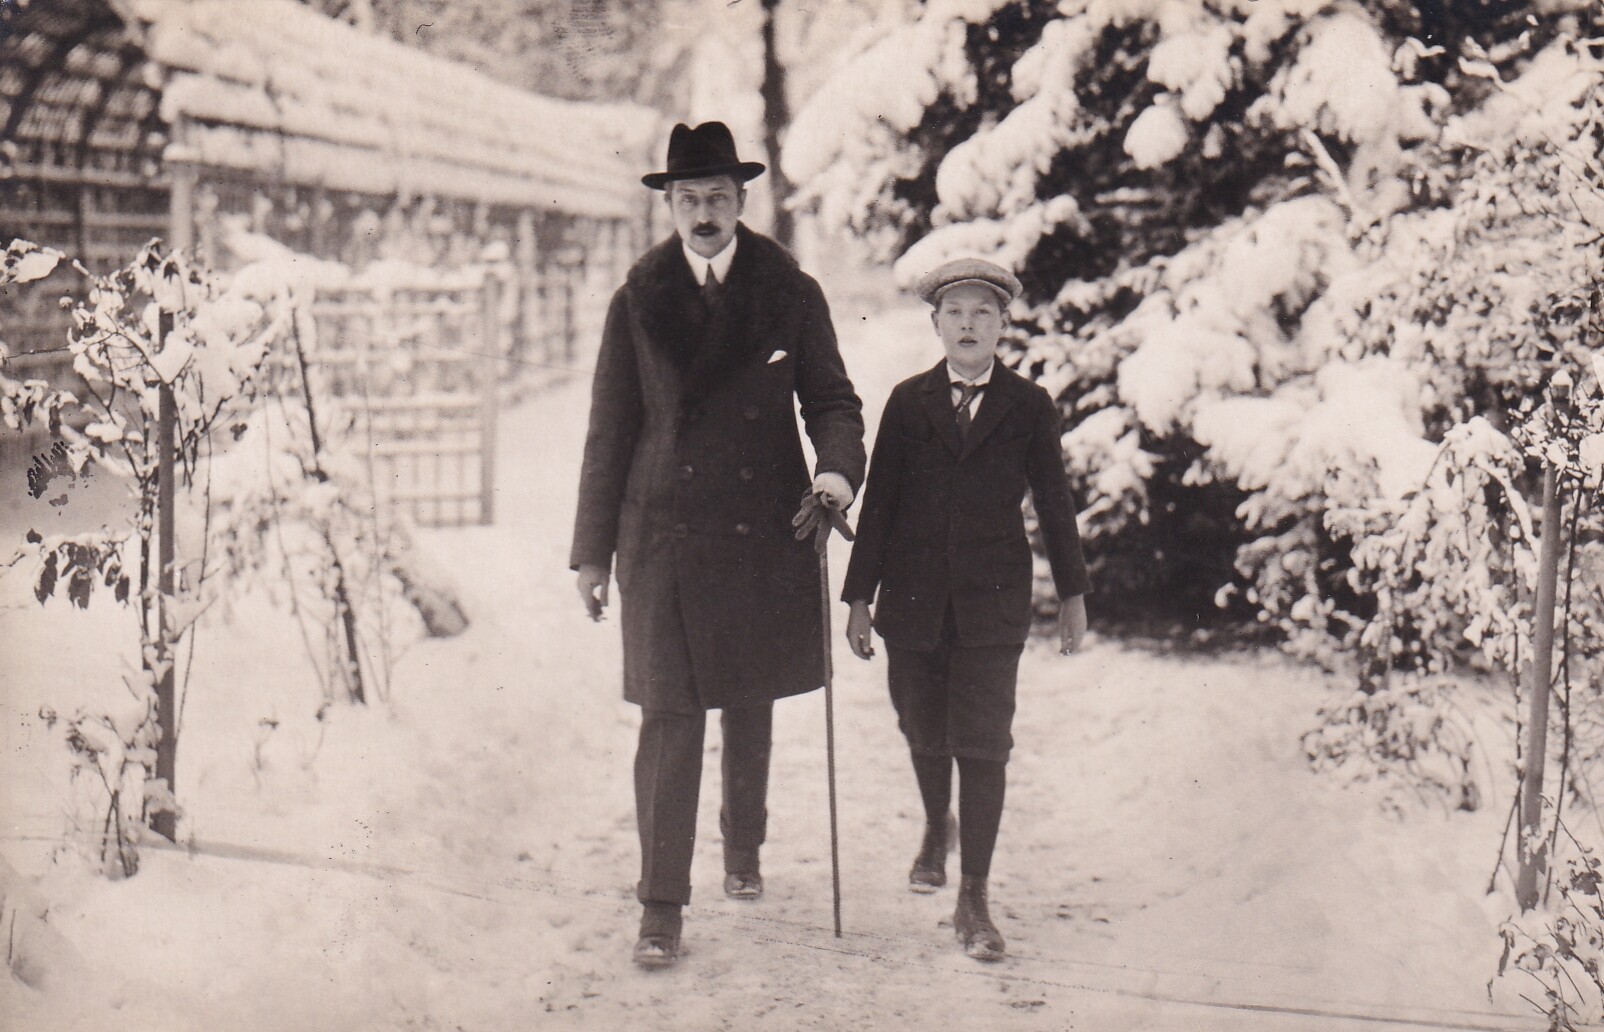 Bildpostkarte mit Foto des August Wilhelm Prinz von Preußen mit seinem Sohn, 1923/24 (Schloß Wernigerode GmbH RR-F)